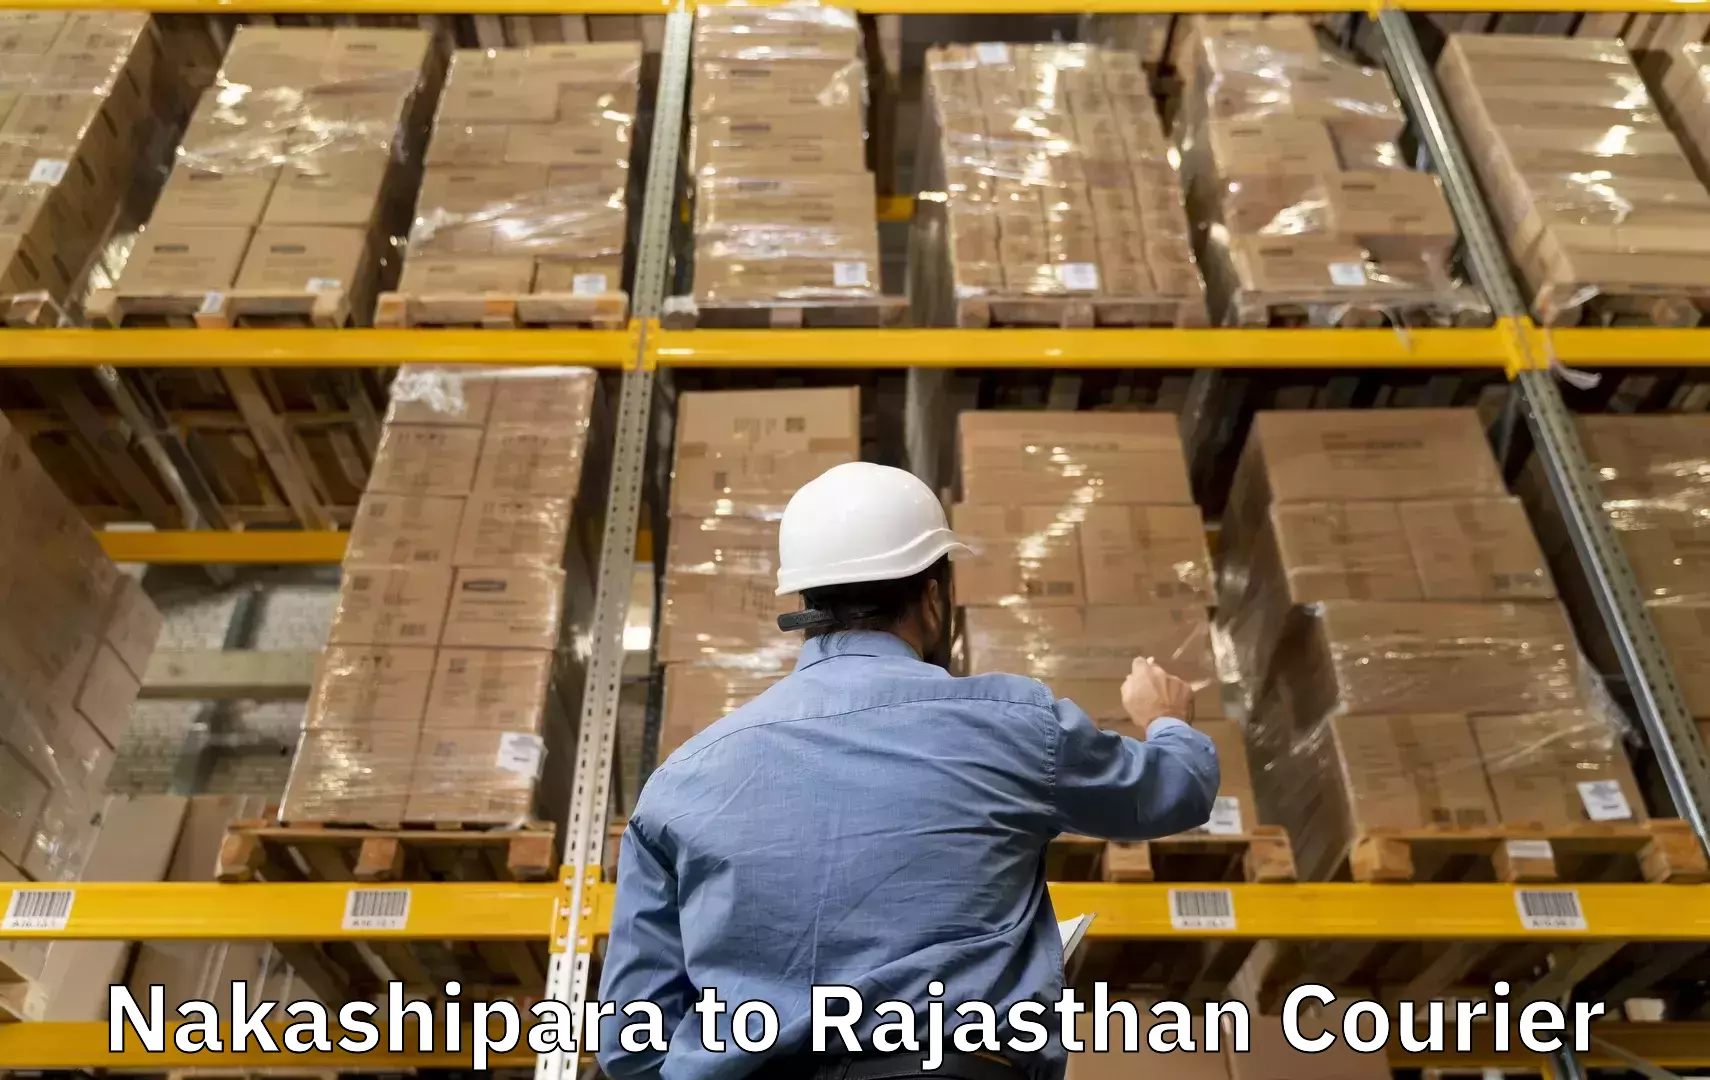 Same day luggage service Nakashipara to Rajasthan